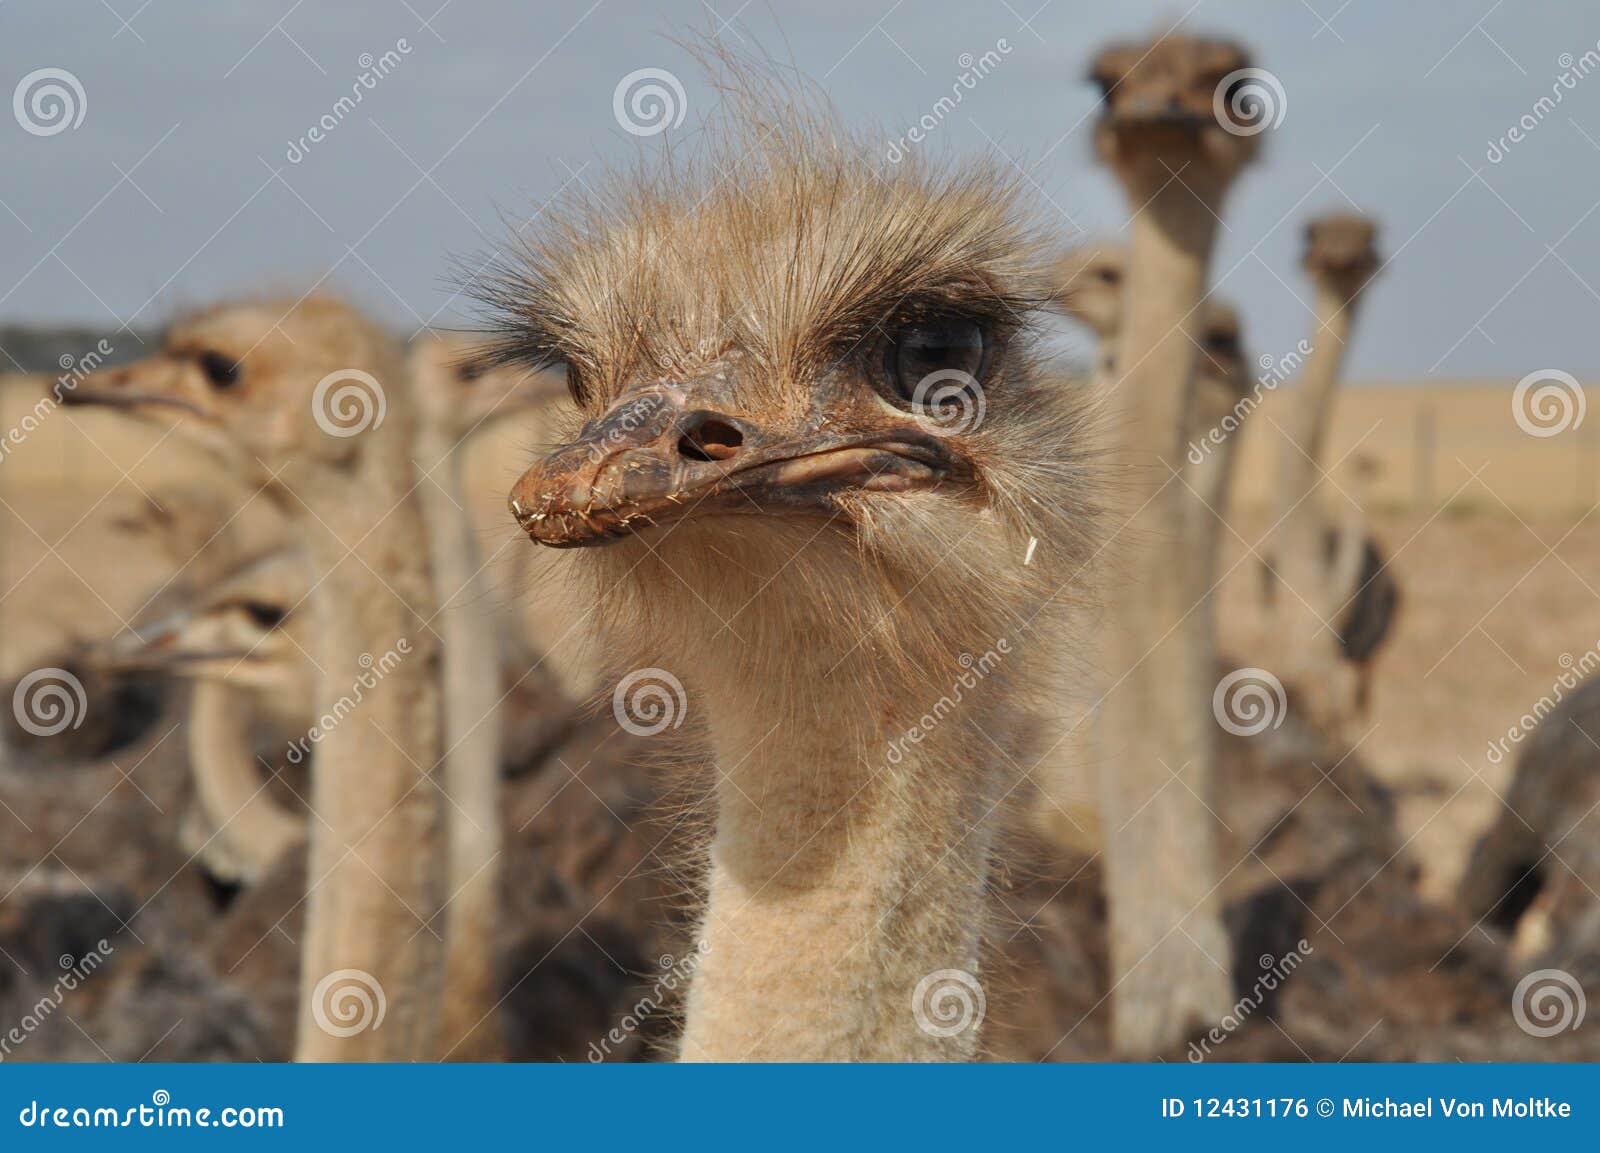 ostrich face